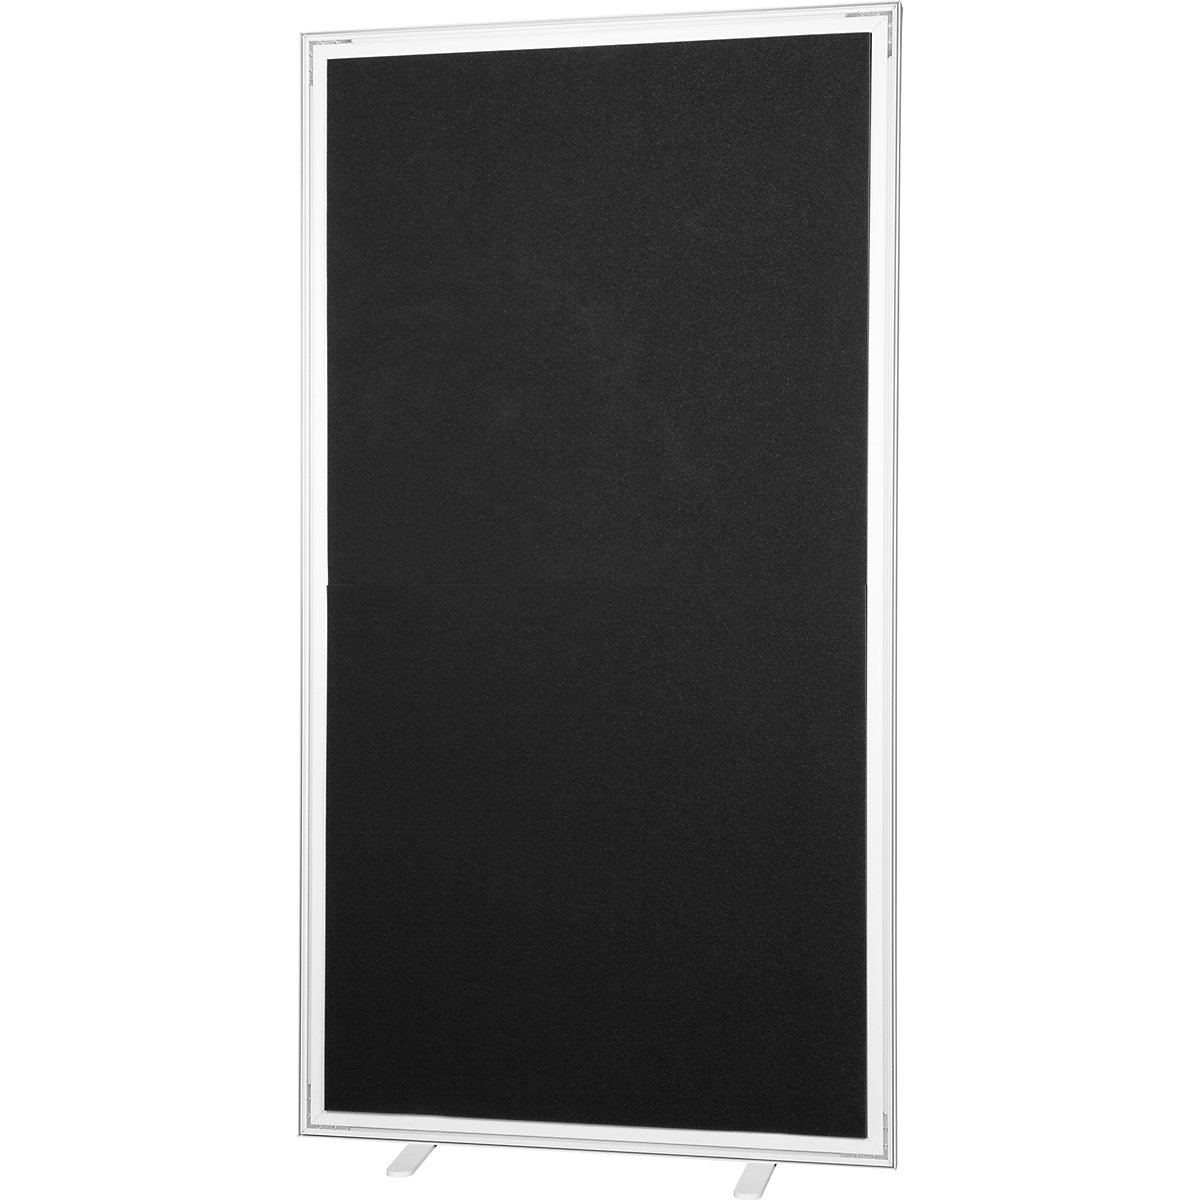 Predelna stena easyScreen, enobarvna izvedba, z zvočno izolacijo, črne barve, širina 1600 mm